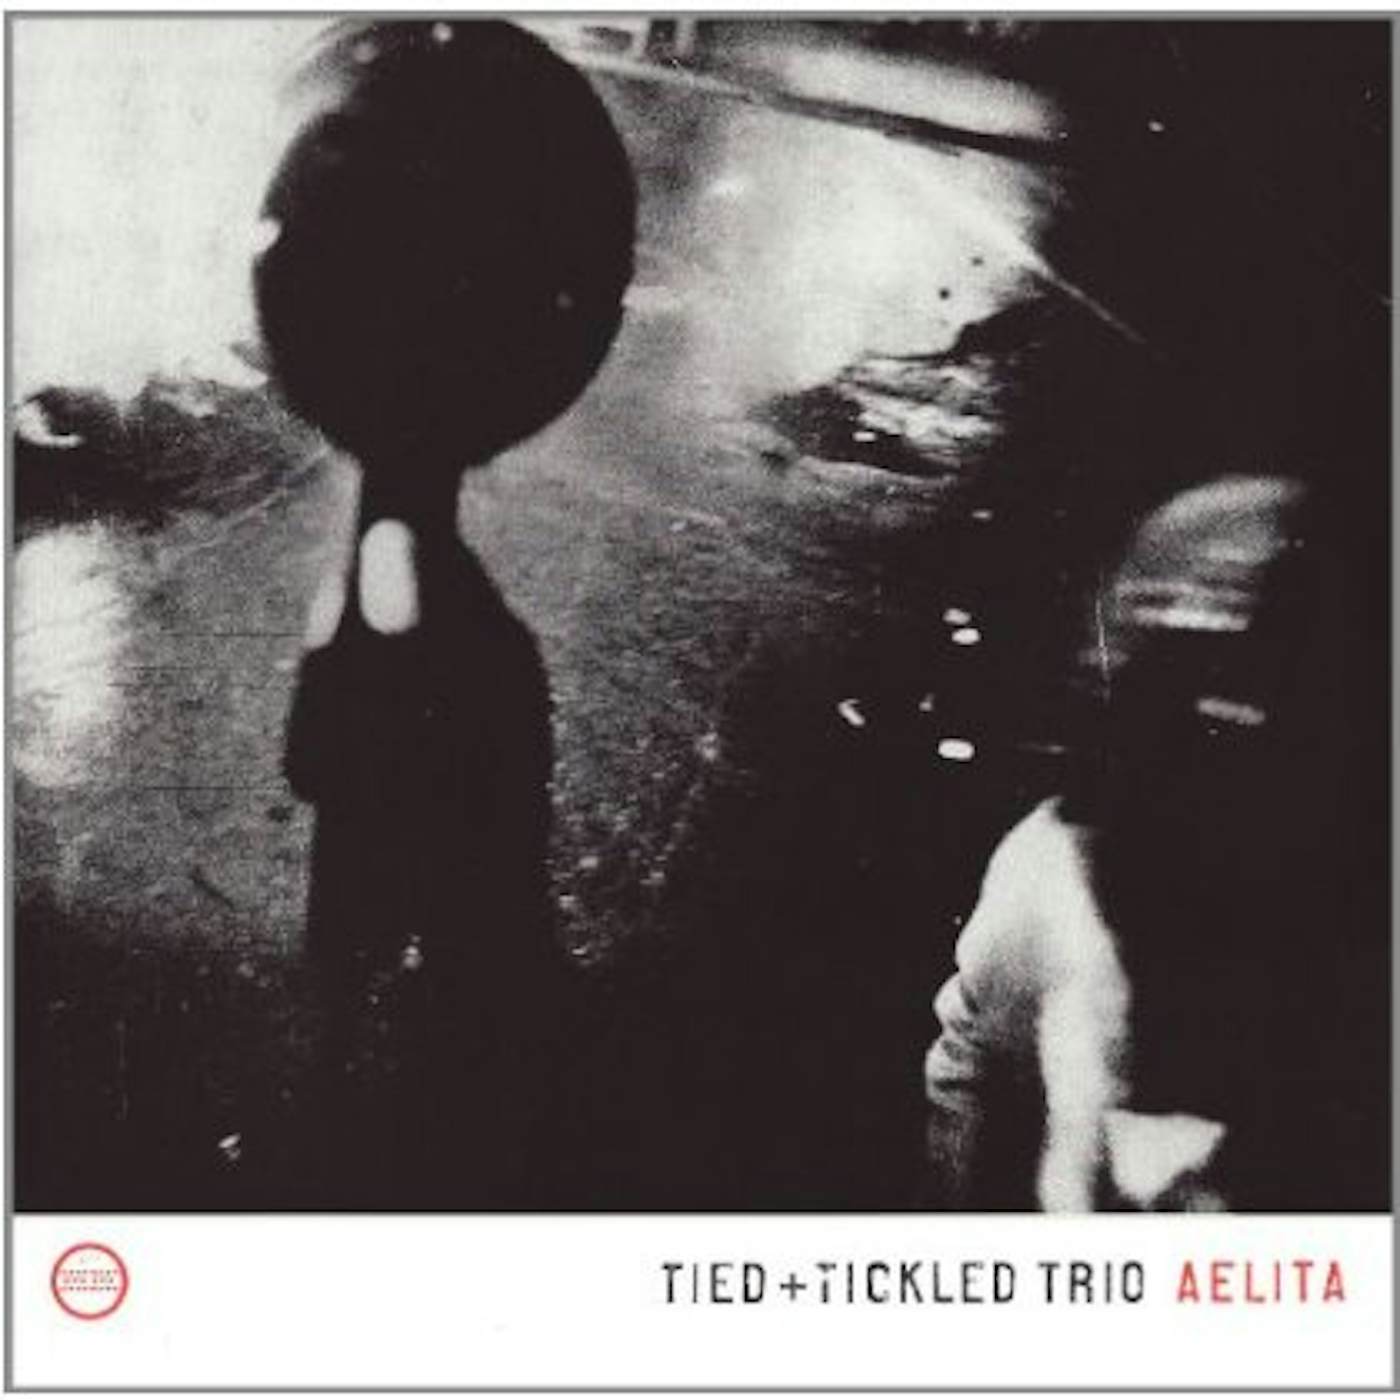 Tied & Tickled Trio Aelita Vinyl Record